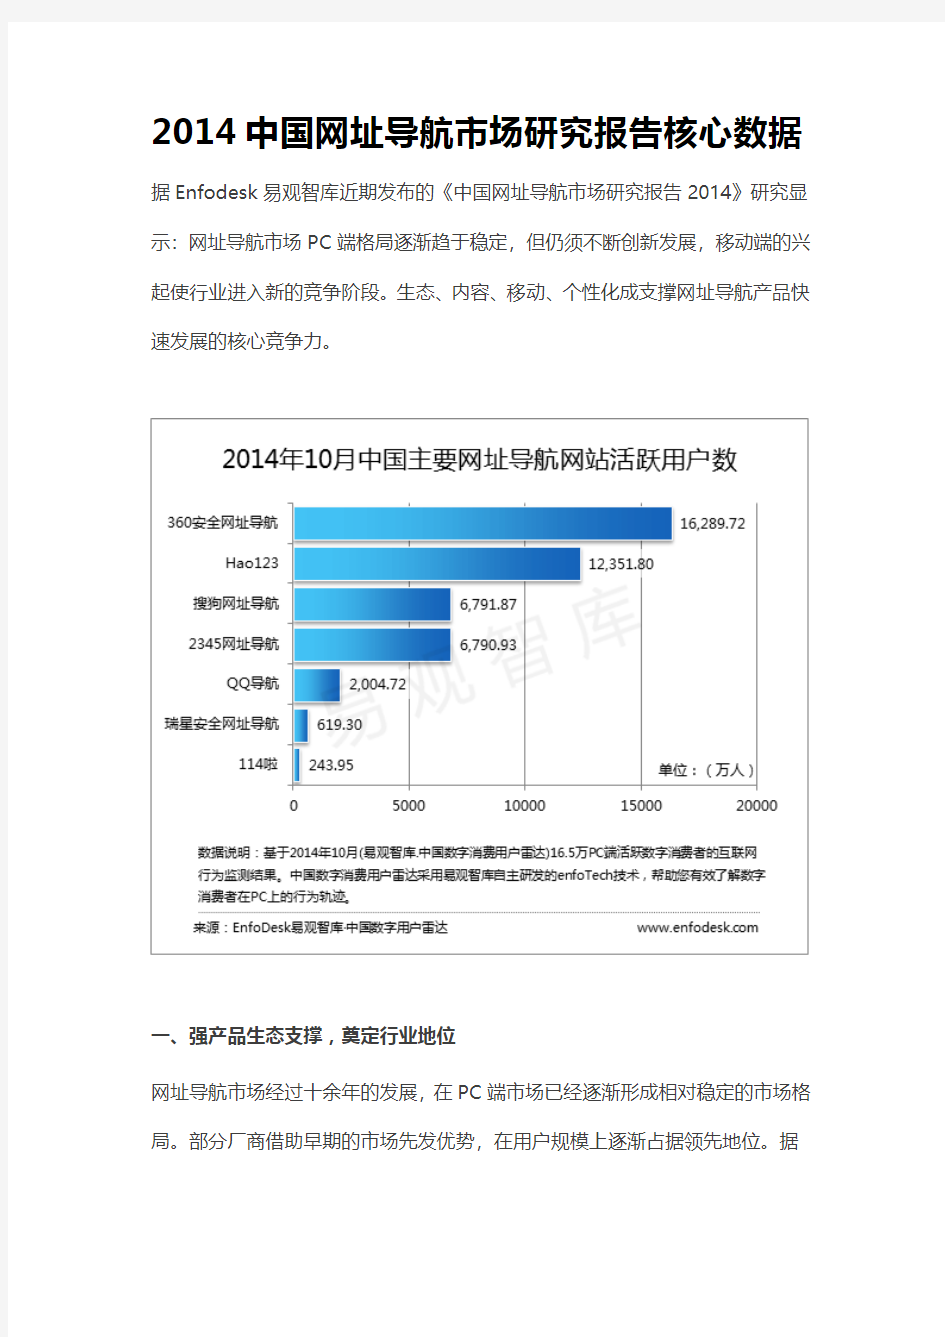 2014中国网址导航市场研究报告核心数据